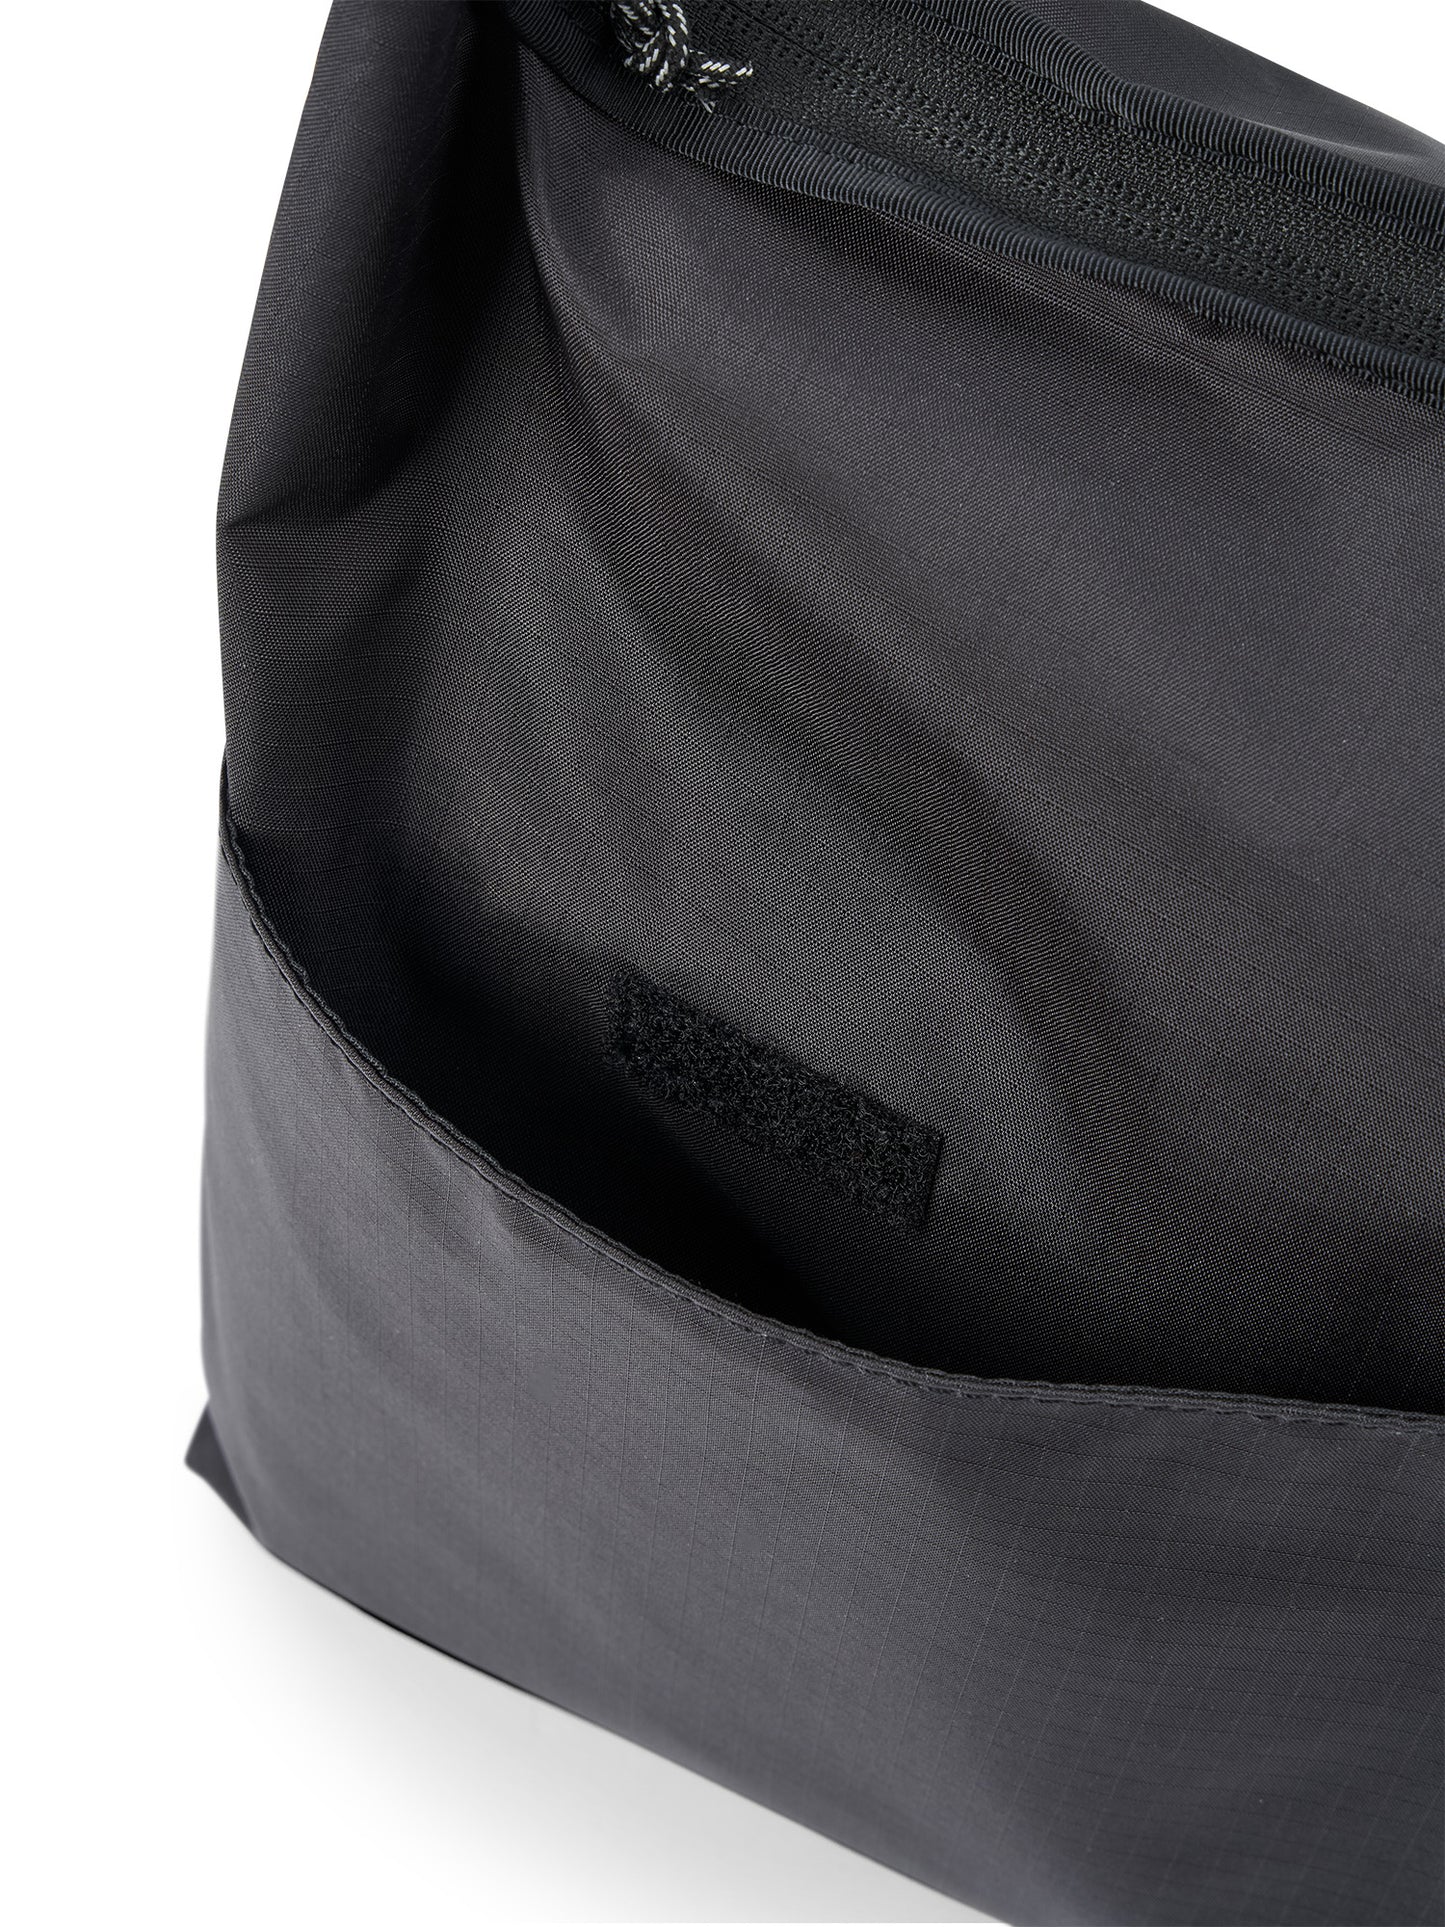 AEVOR-Shoulder-Bag-Light-Large-Ripstop-Black-details